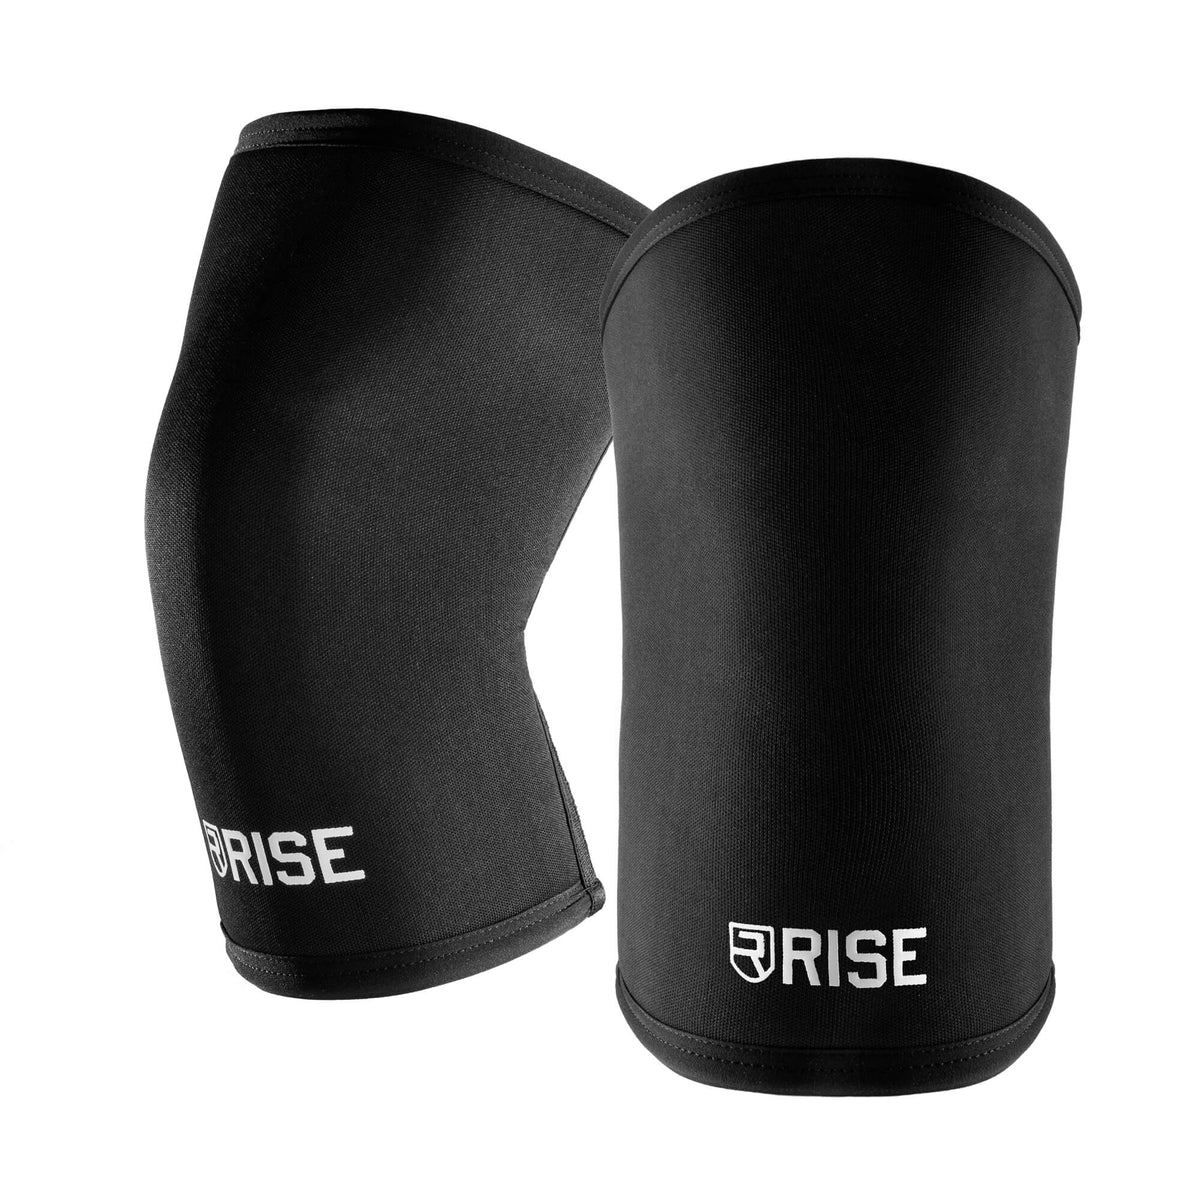 https://www.risestore.com/cdn/shop/files/30cm-knee-sleeves-black-optic-1_1200x.jpg?v=1683929615